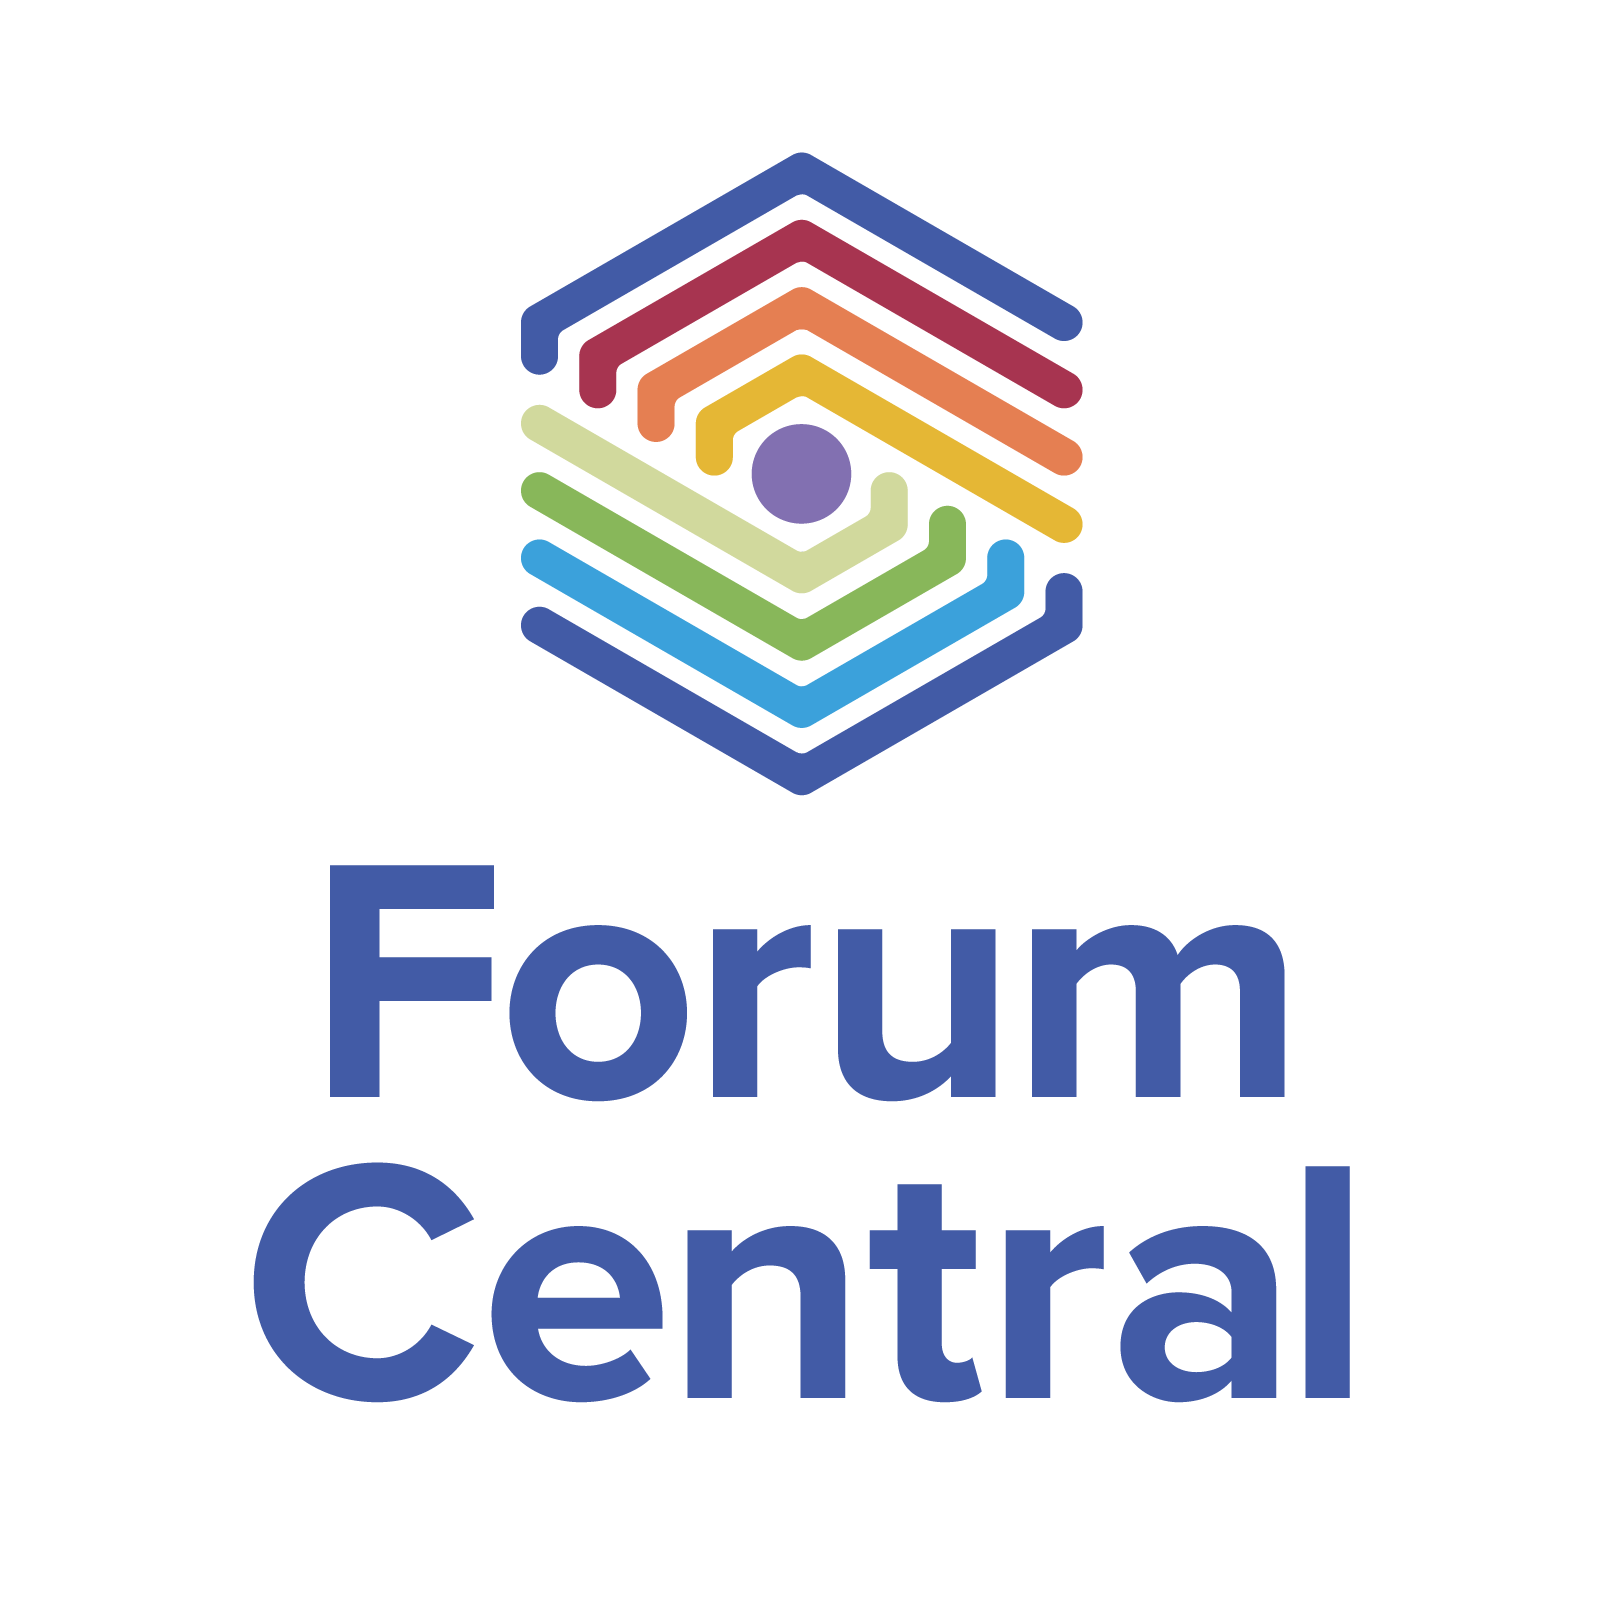 Forum central logo